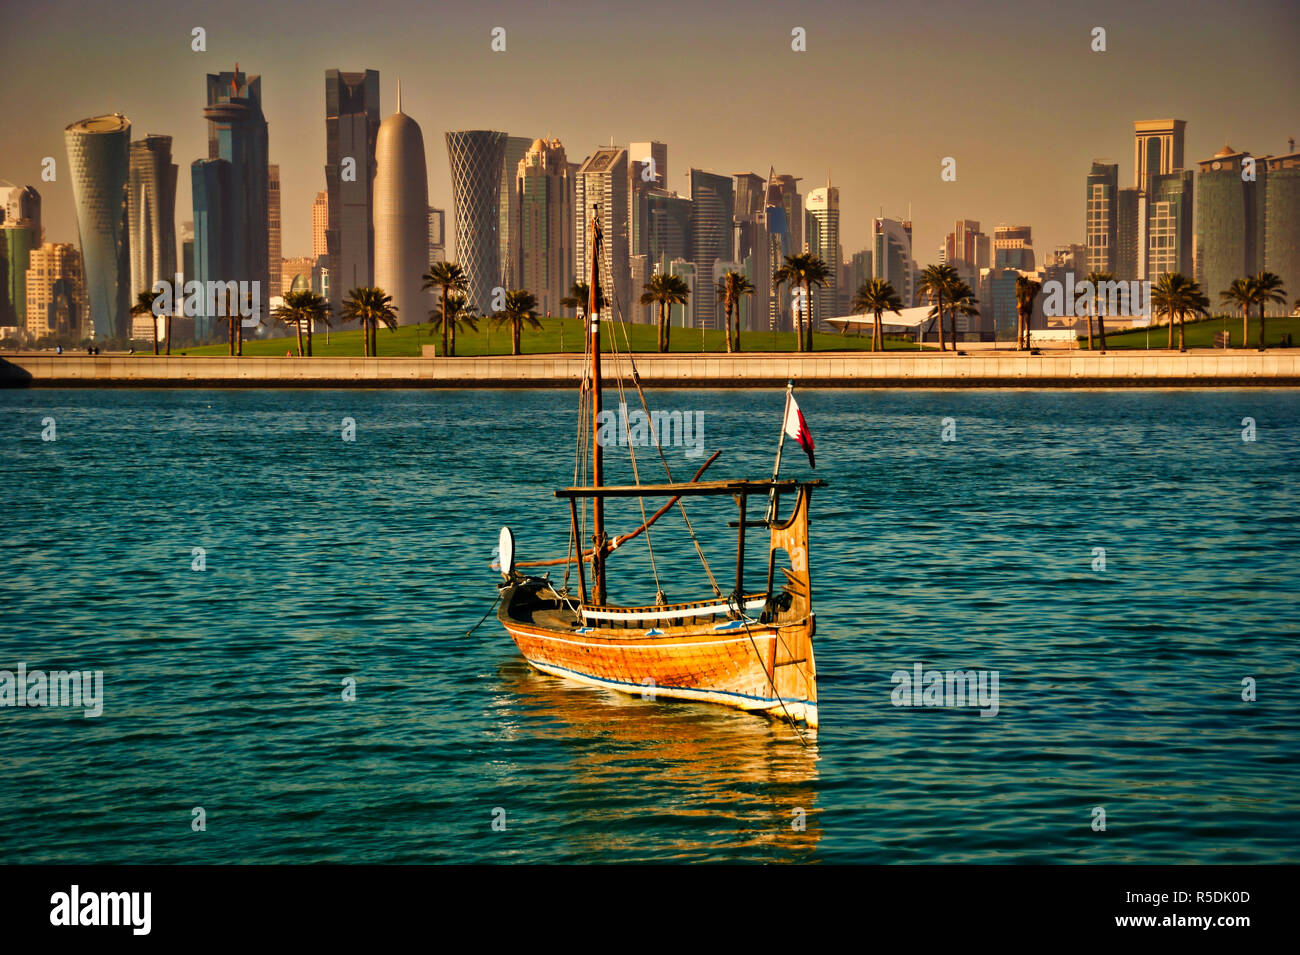 Modernos rascacielos de Doha con embarcación dhow tradicional Foto de stock